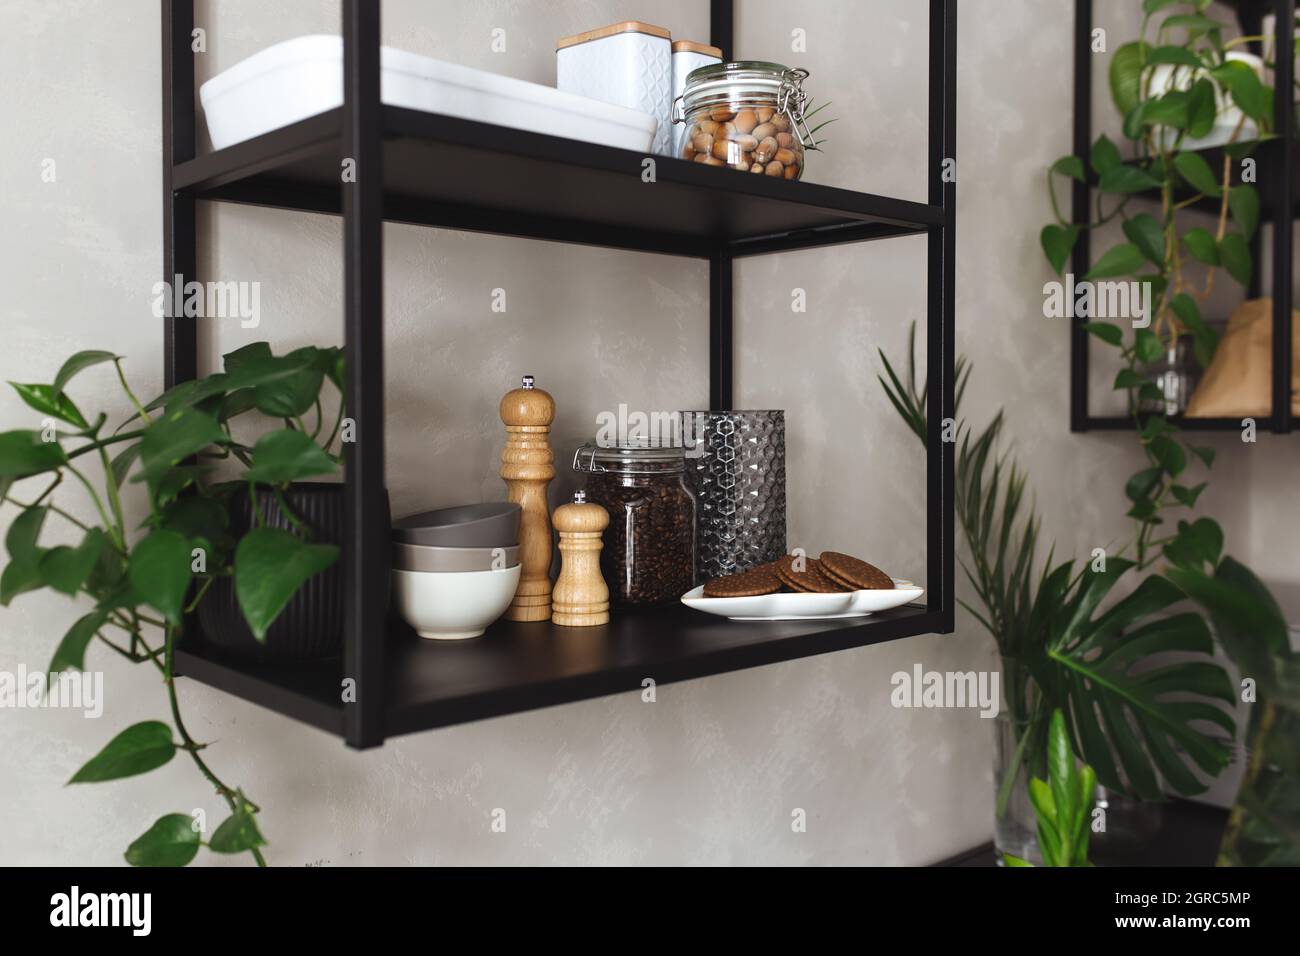 Schwarze Metallregale in der Küche auf Einer grauen Betonwand im Loft-Stil.  Grüne Blumentöpfe Stockfotografie - Alamy